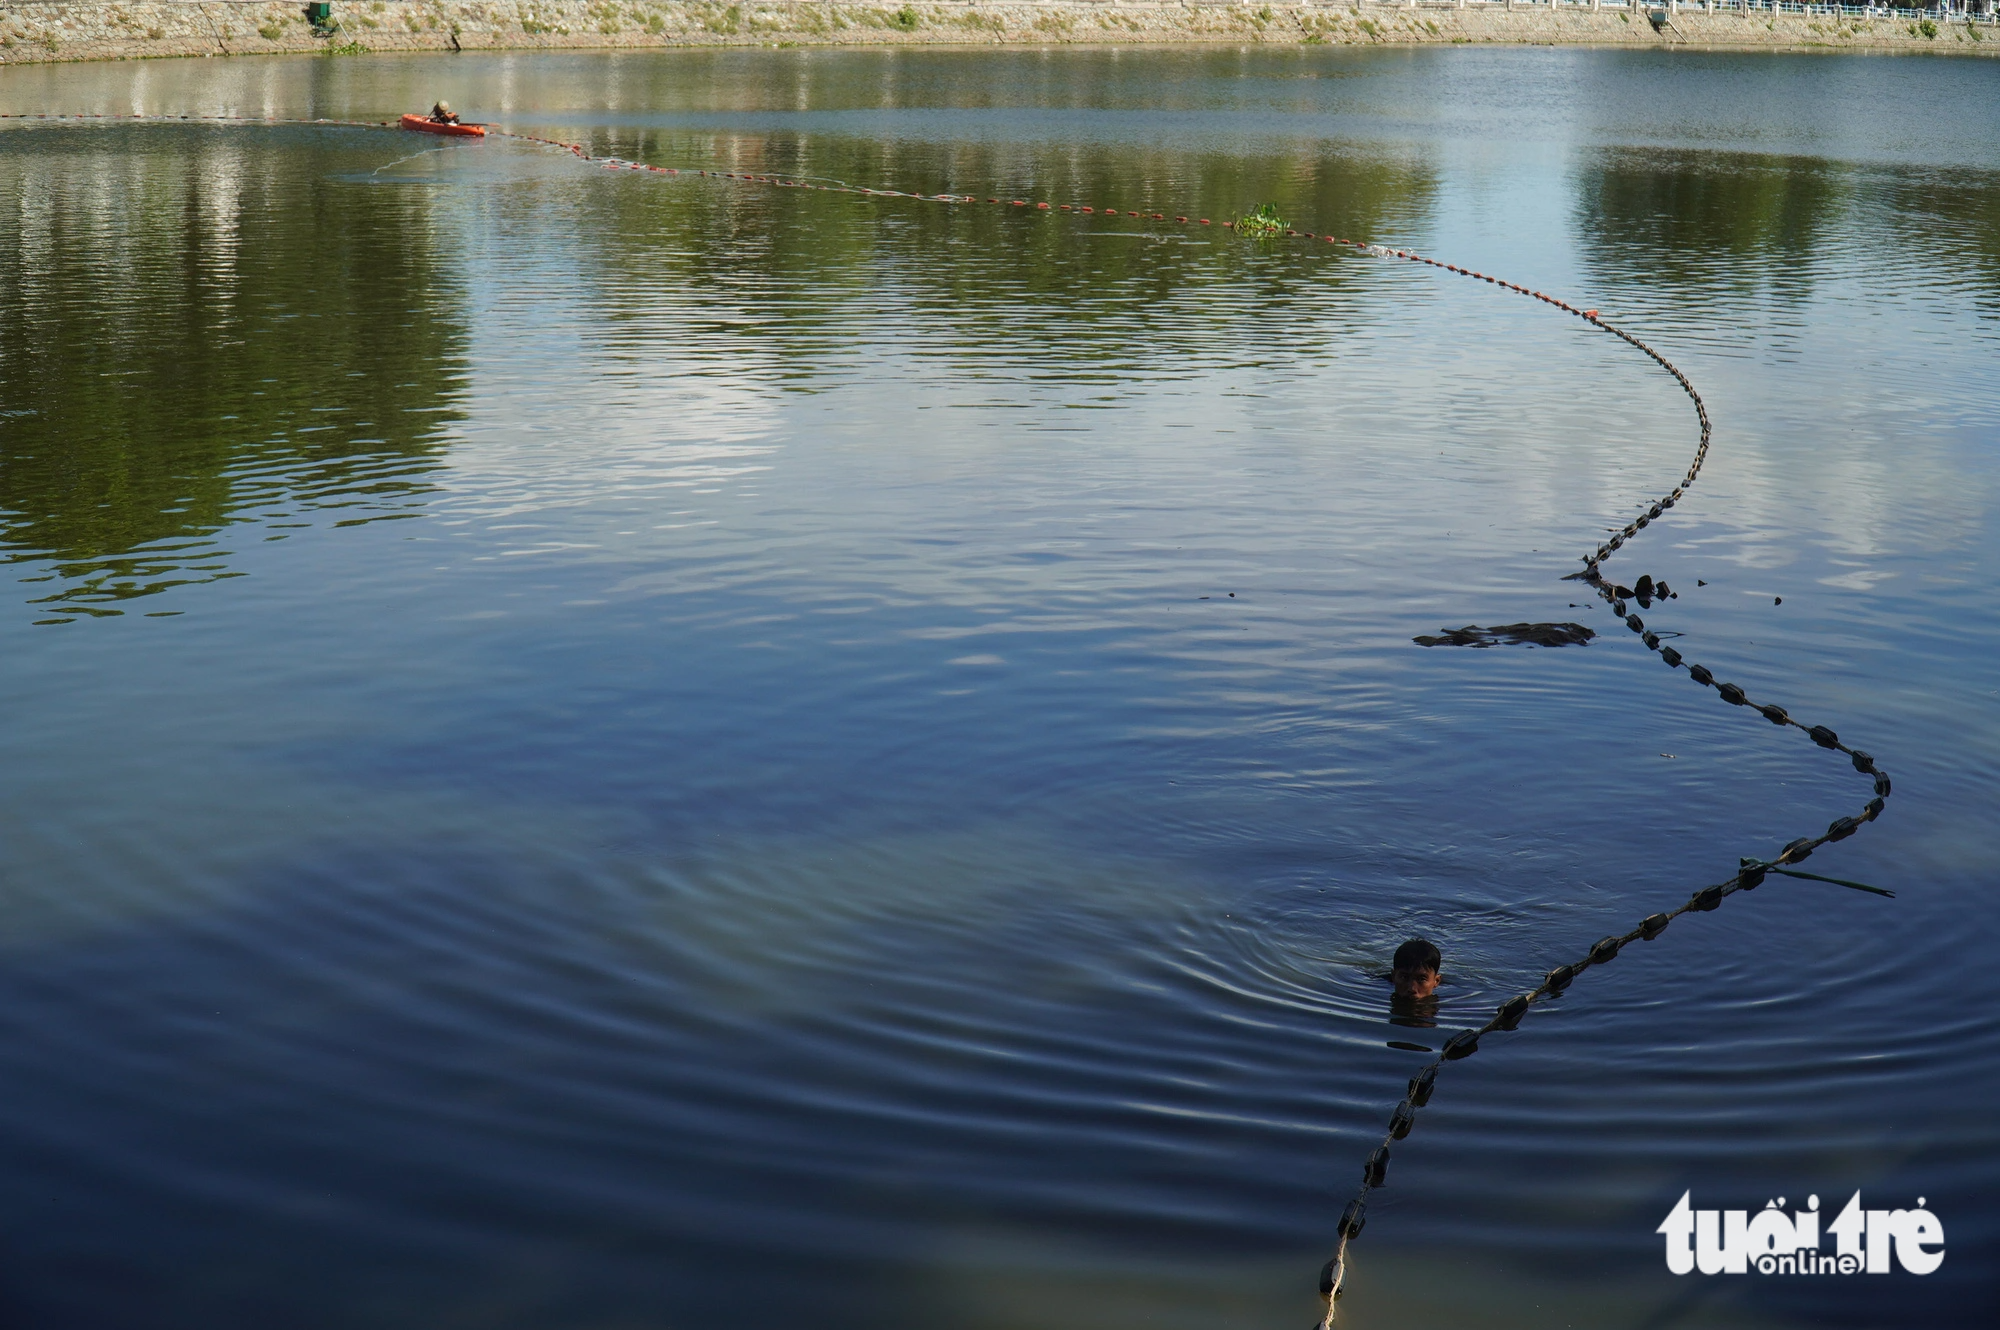 Người dân đang bủa lưới để đánh bắt cá tại Giếng nước Mỹ Tho - Ảnh: MẬU TRƯỜNG